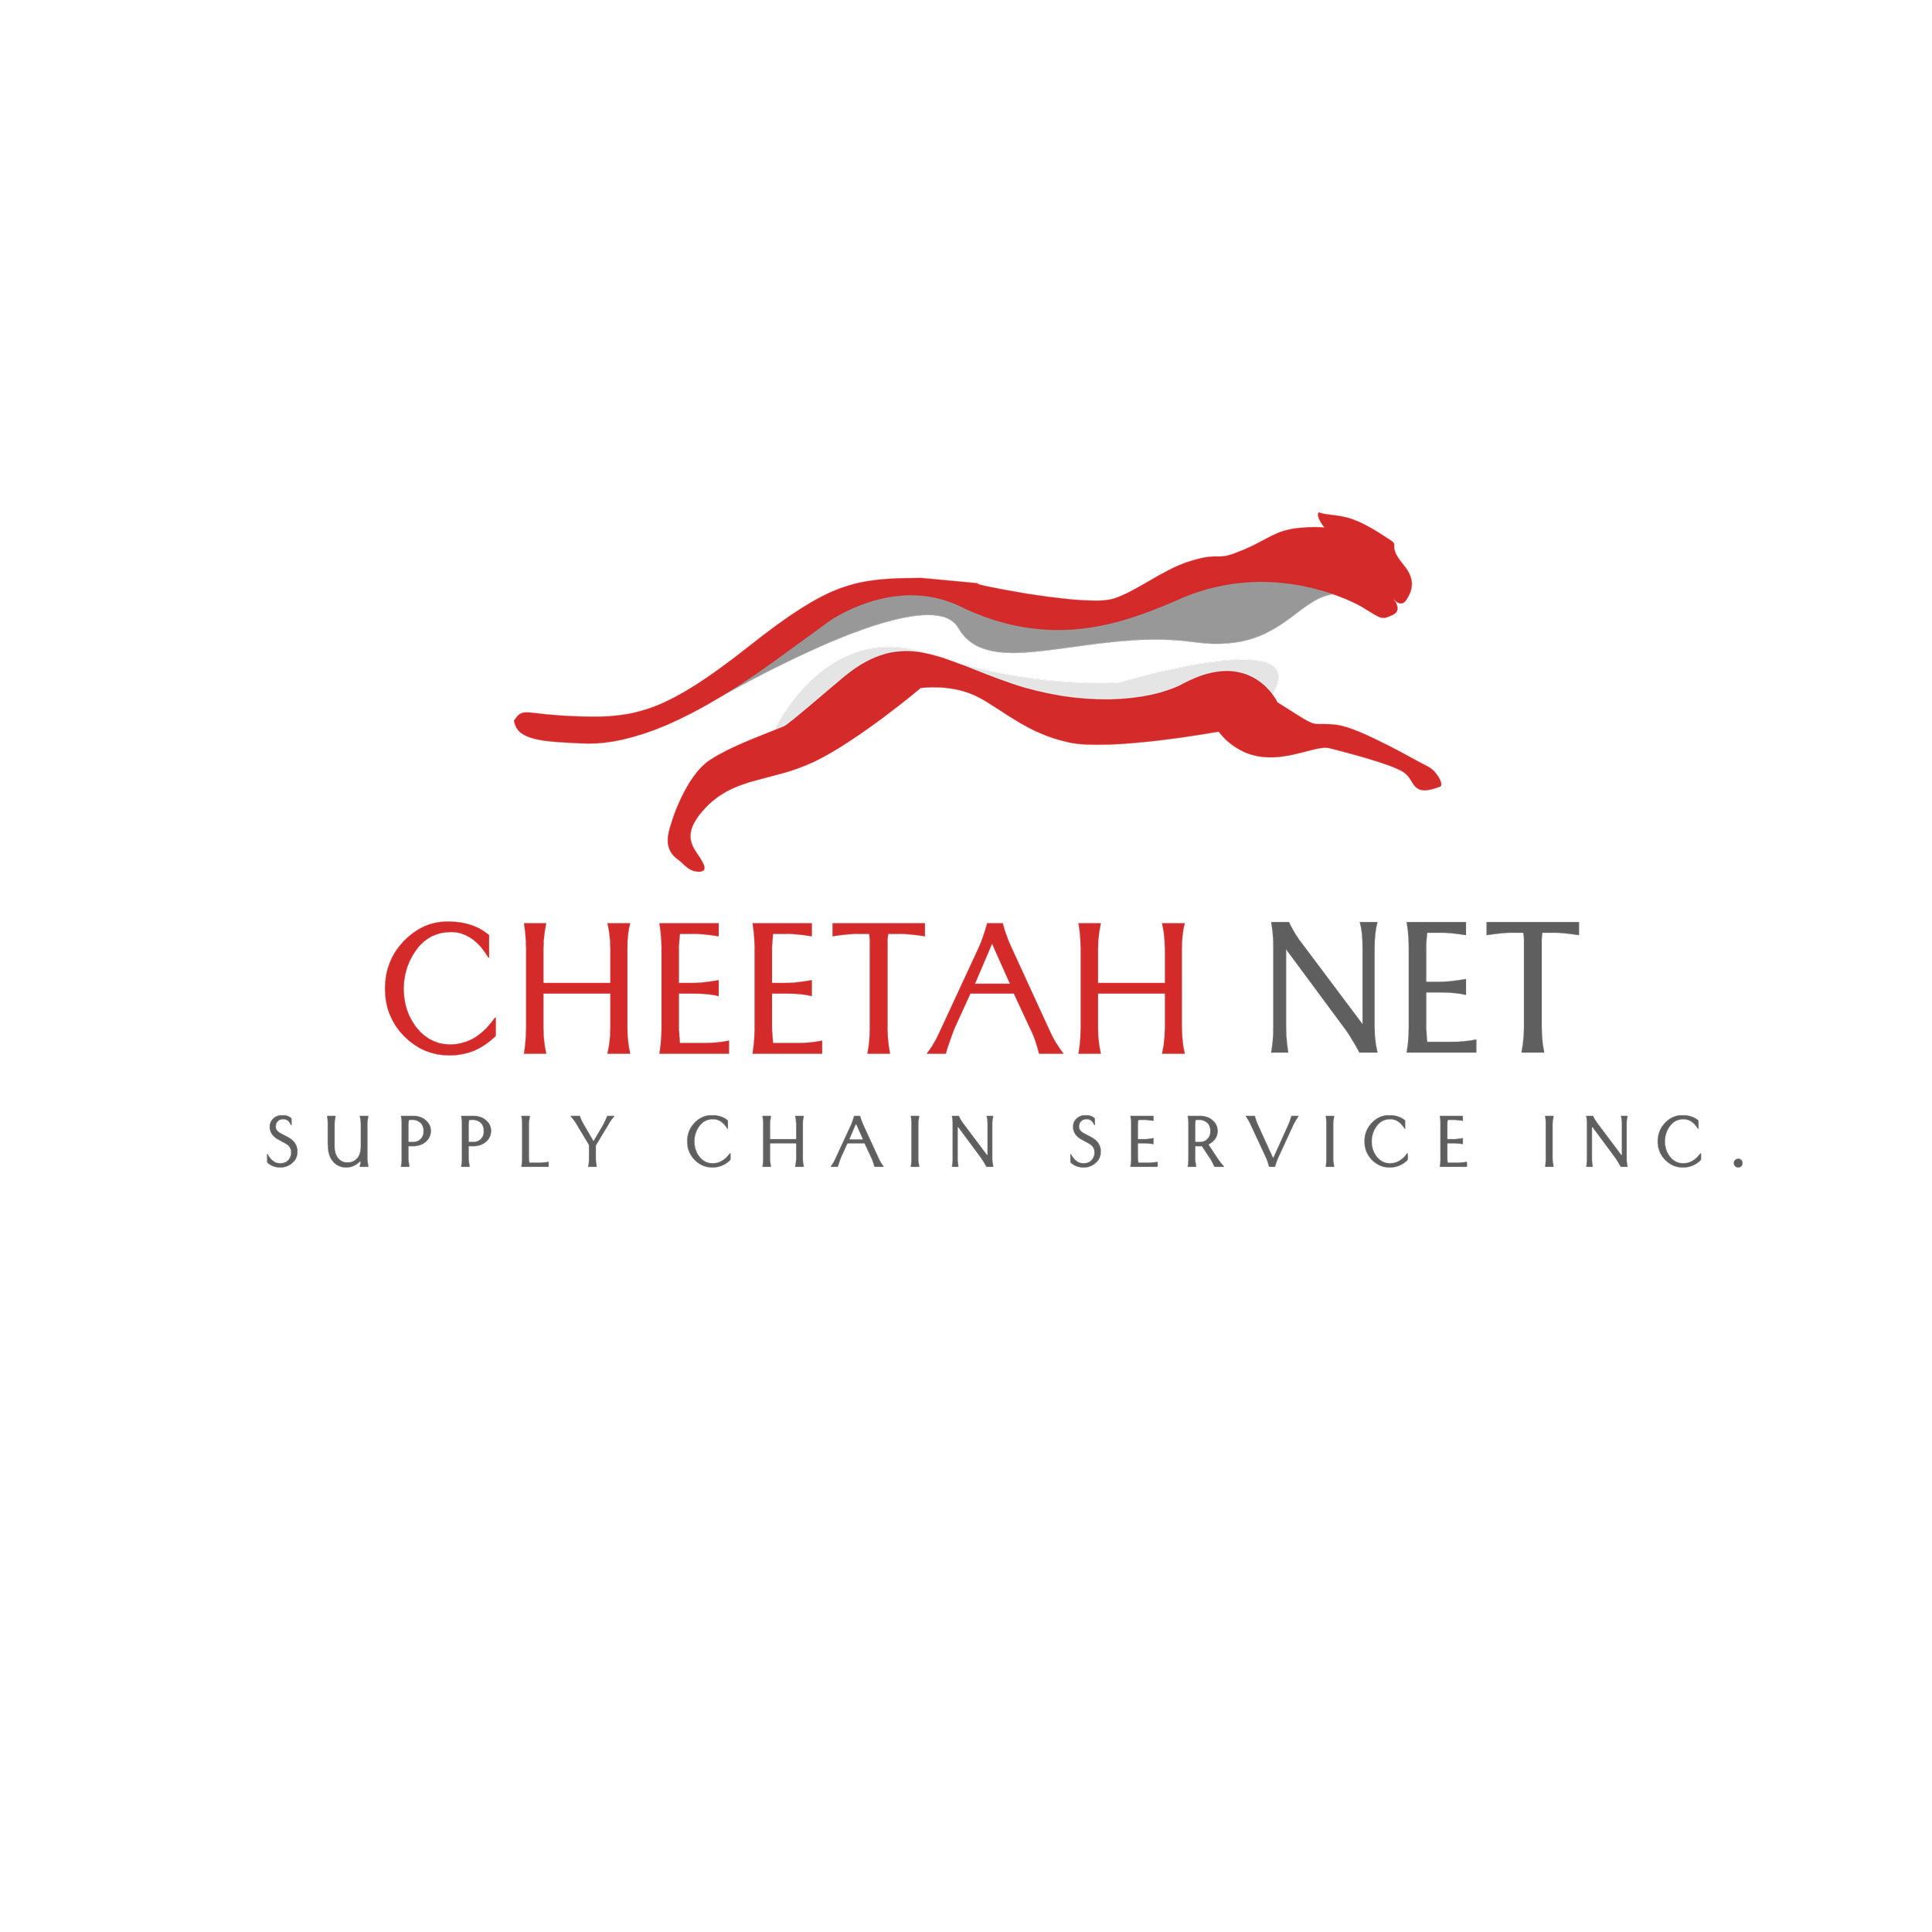 Service chain